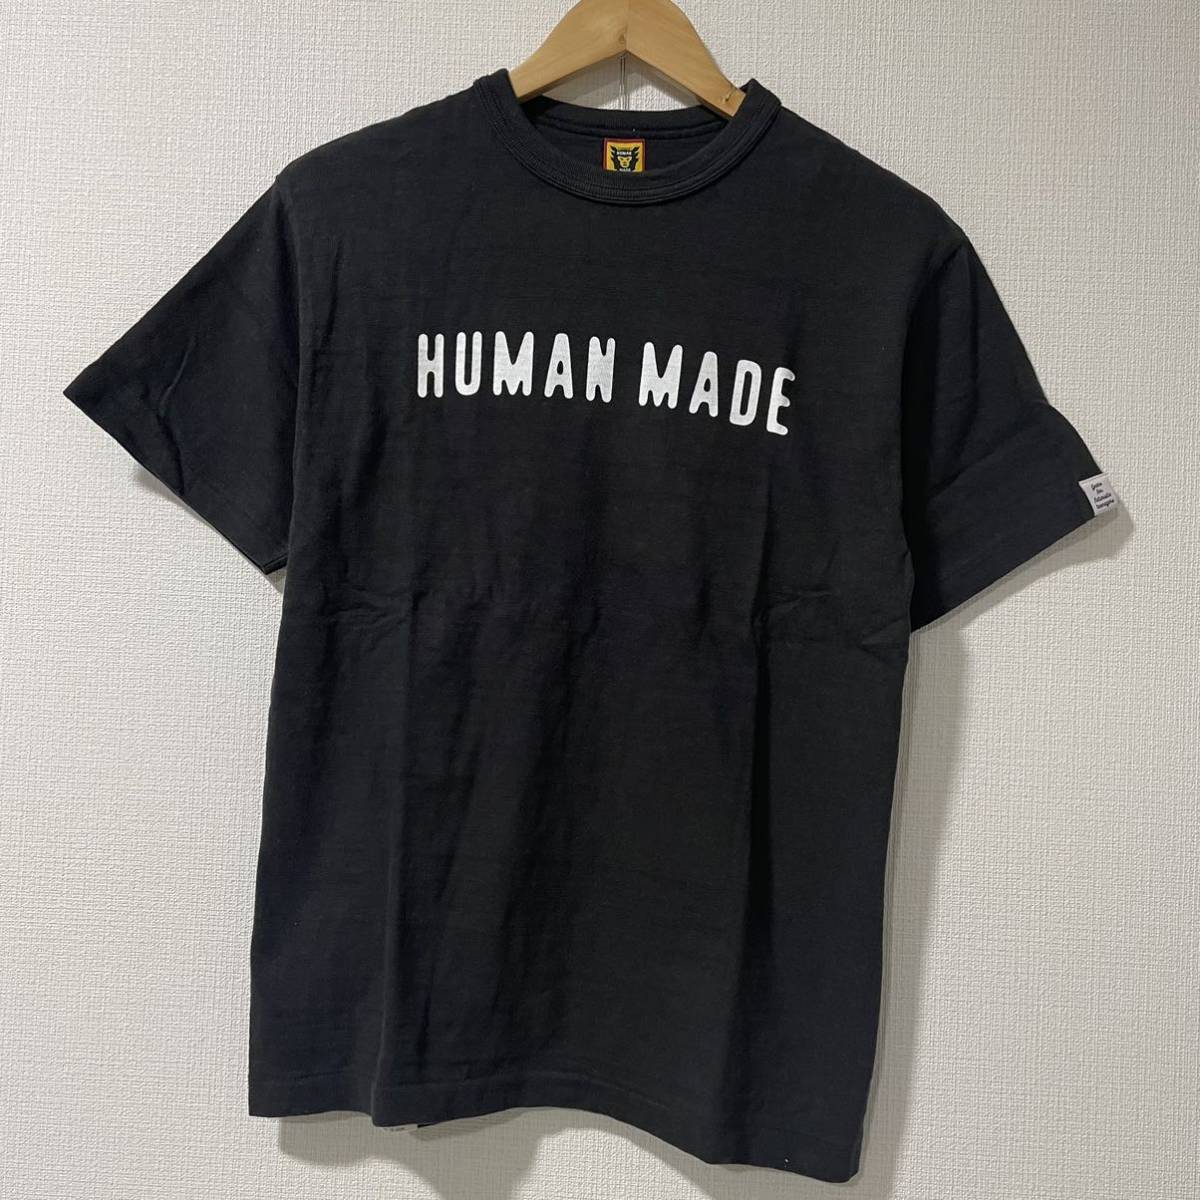 消費税無し 正規品 美品 ヒューマンメイド human made 半袖 Tシャツ BLACK ブラック トップス 夏服 Logo Mサイズ